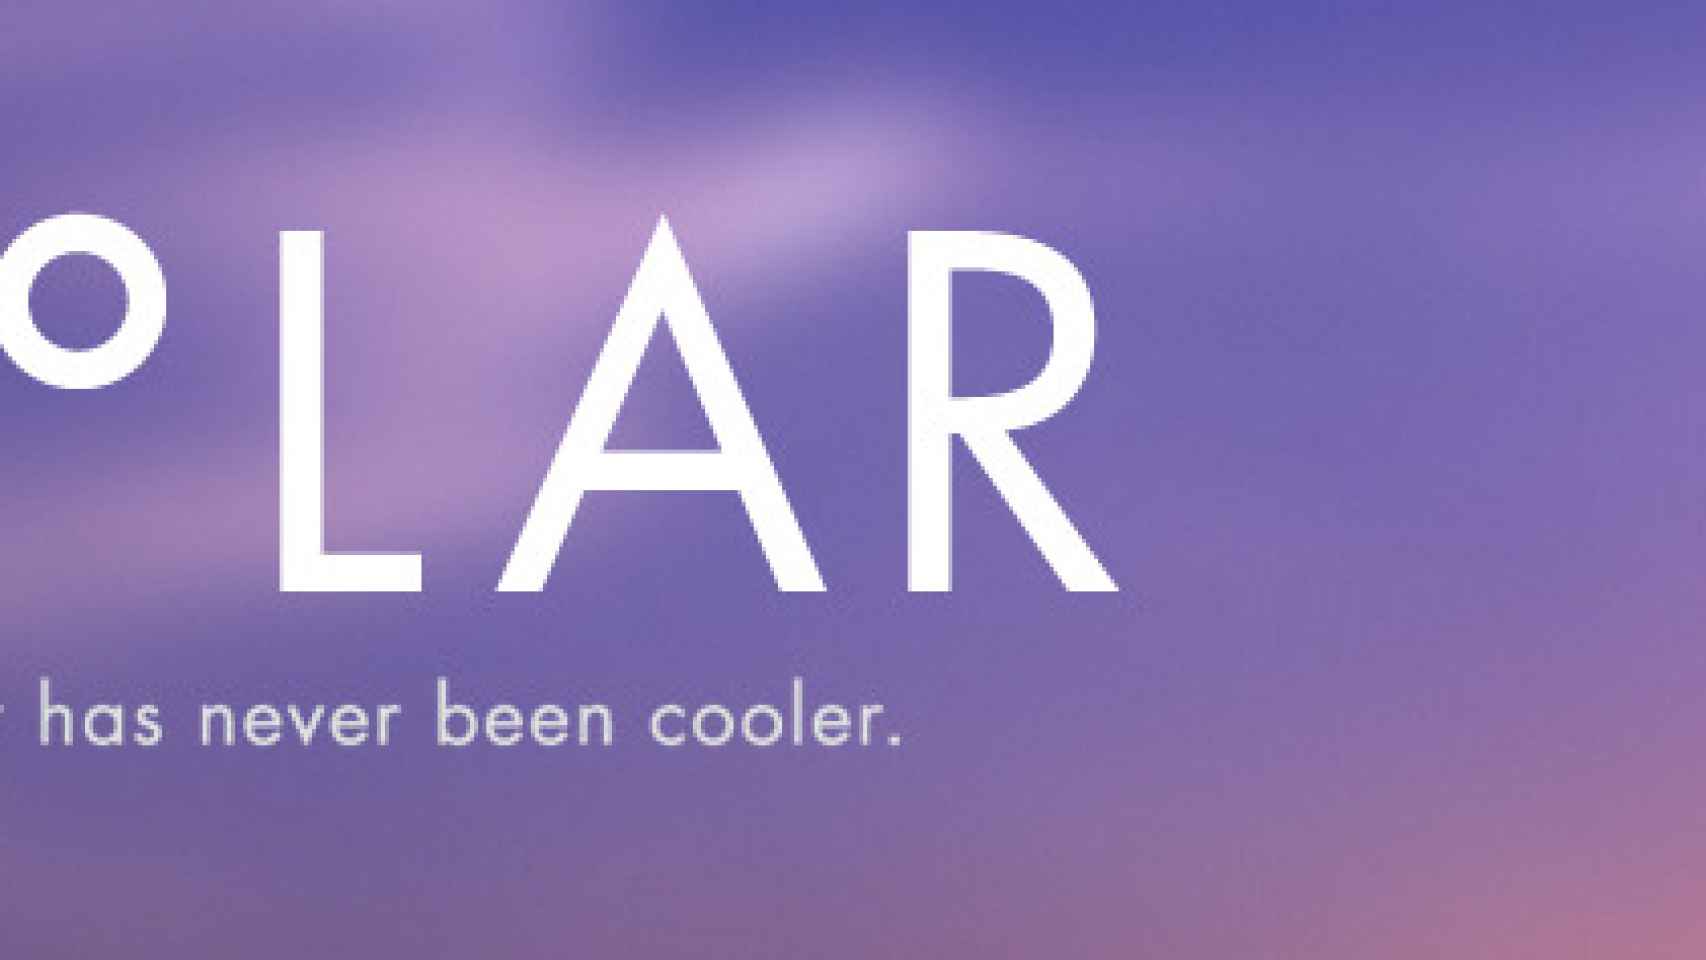 Solar: Weather, el tiempo minimalista ya disponible en Android